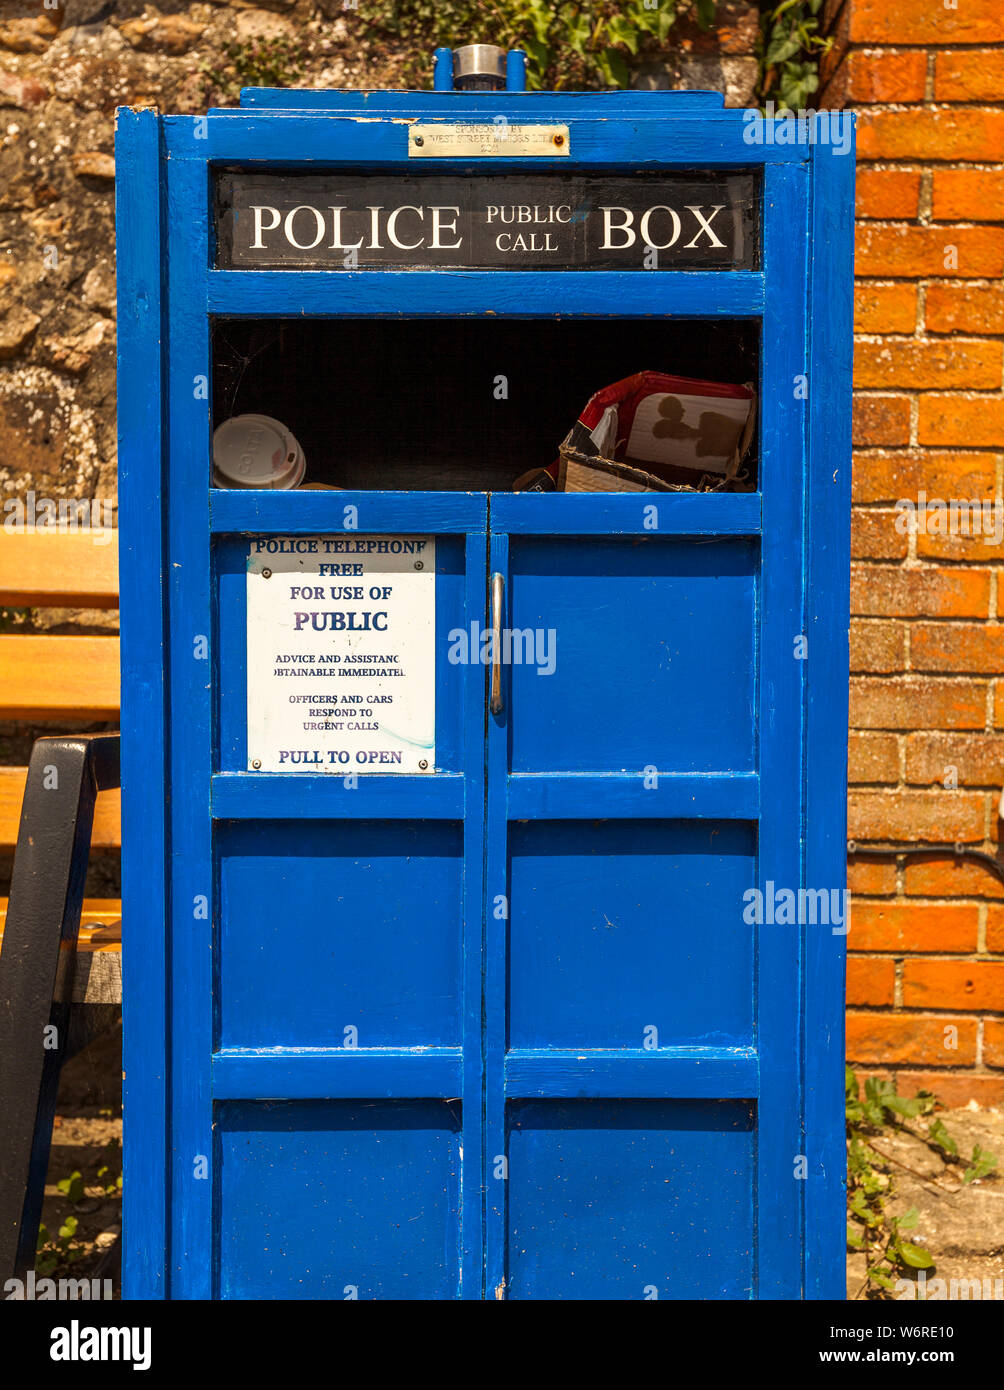 Call Box pubblica di polizia ad Aldbourne, Inghilterra, Regno Unito. Telefono della polizia. Gratuito per uso pubblico. Consulenza e assistenza ottenibili immediatamente. Gli ufficiali e le automobili rispondono alle chiamate di urgend. Tirare per aprire Foto Stock